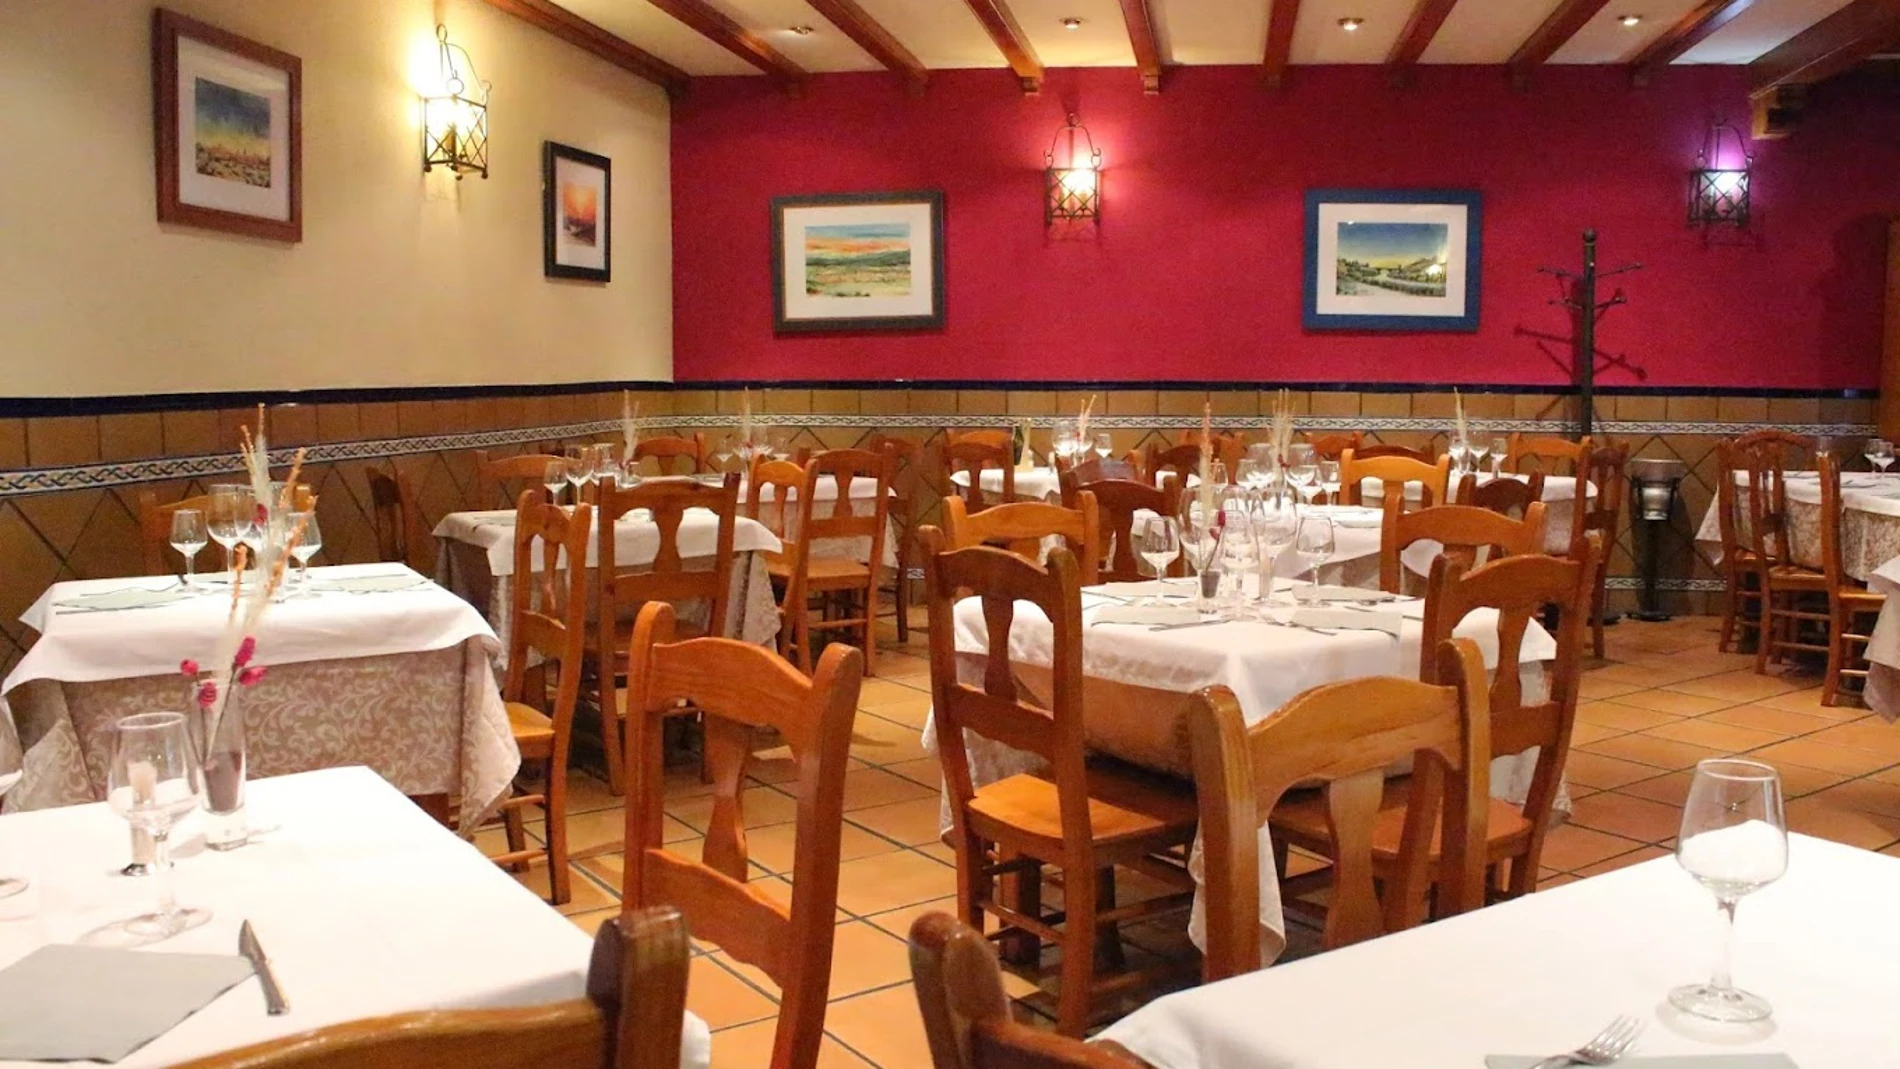 El mejor restaurante para comer durante las fiestas del Corpus Christie de Toledo según Google